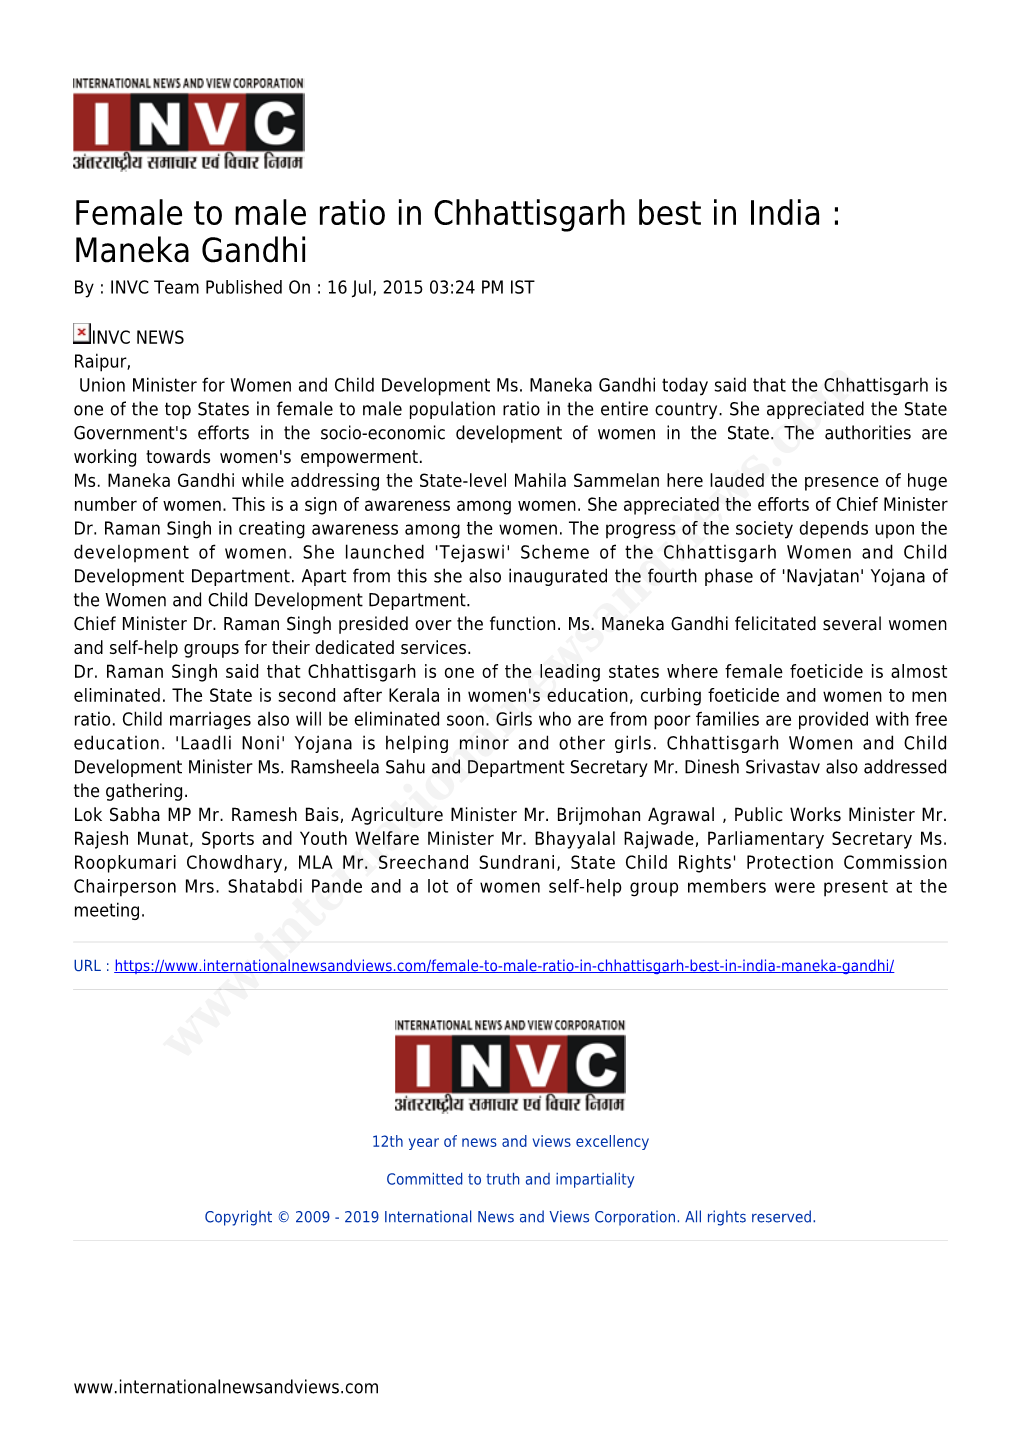 Maneka Gandhi by : INVC Team Published on : 16 Jul, 2015 03:24 PM IST